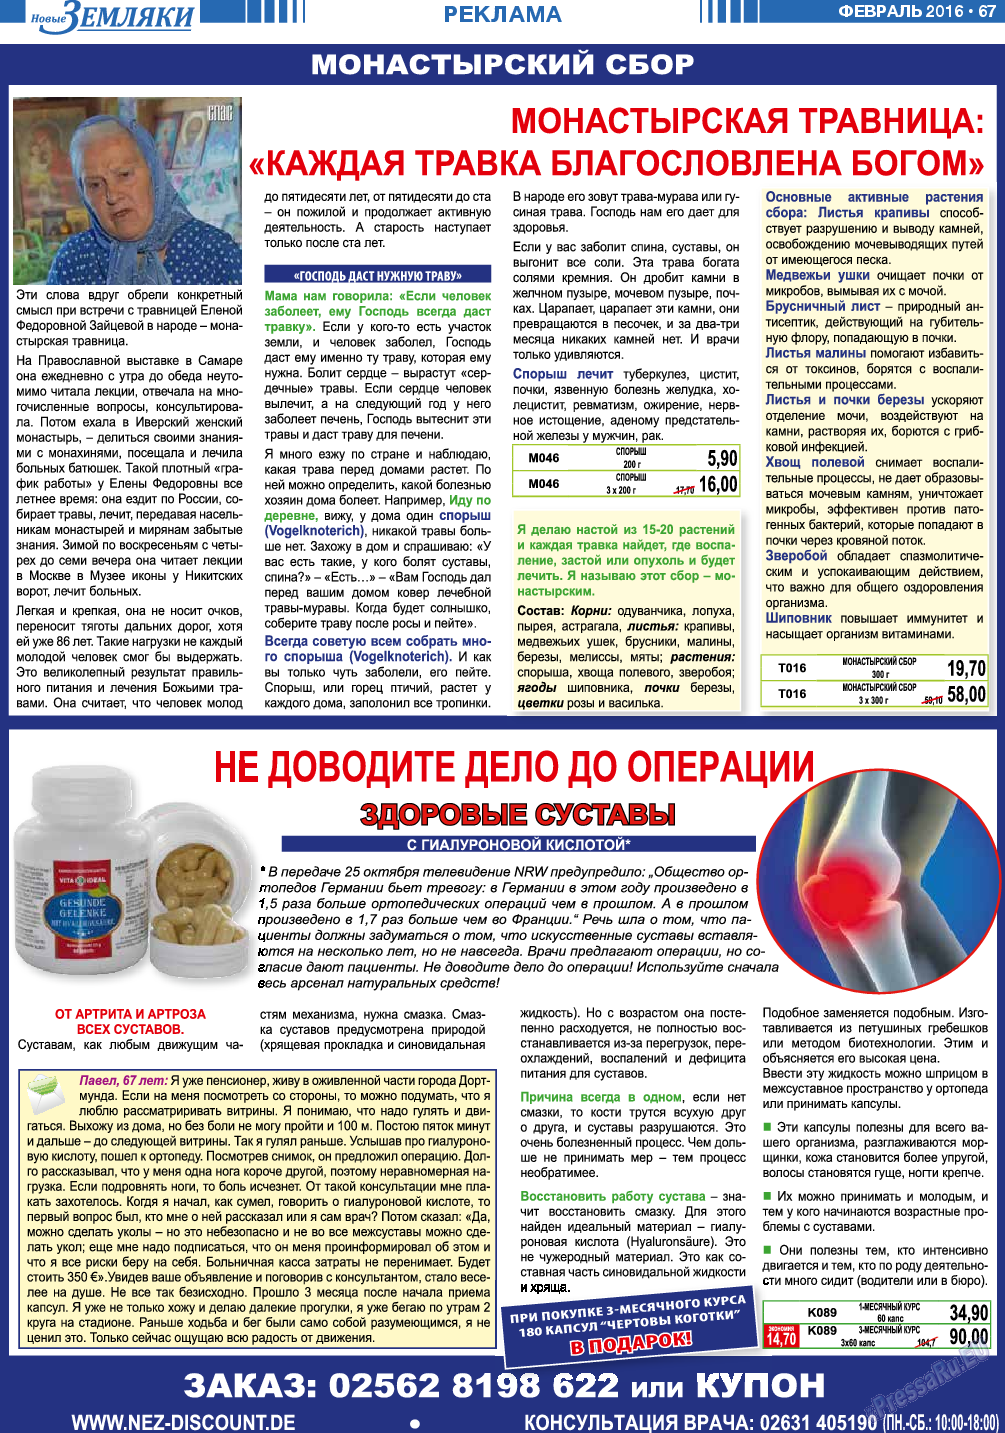 Новые Земляки, газета. 2016 №2 стр.67